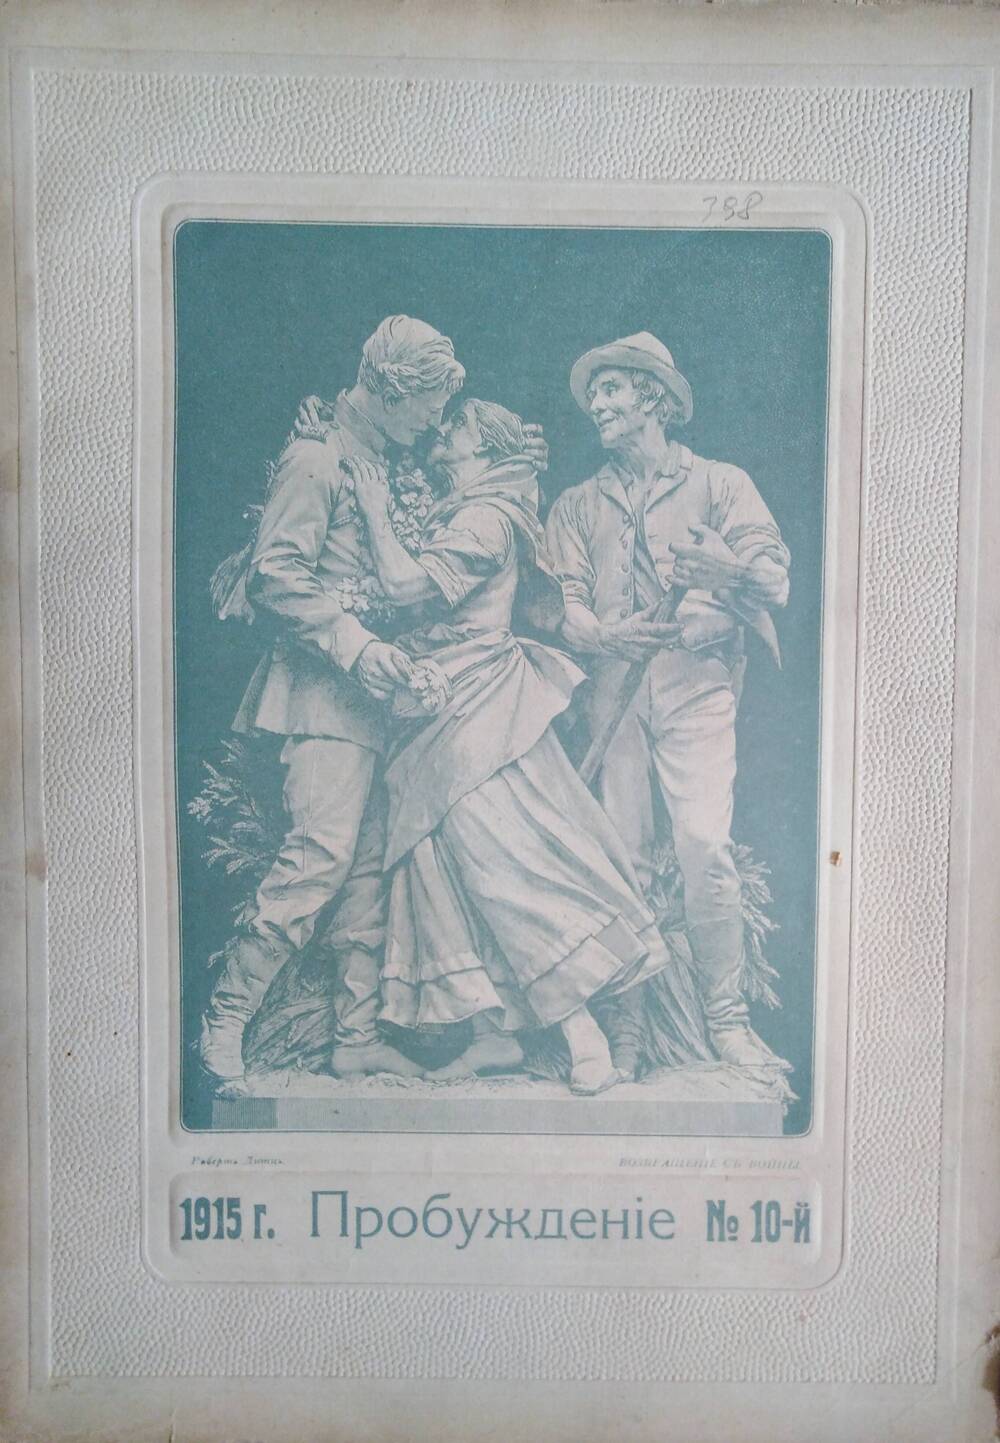 Пробуждение, 1915, №10